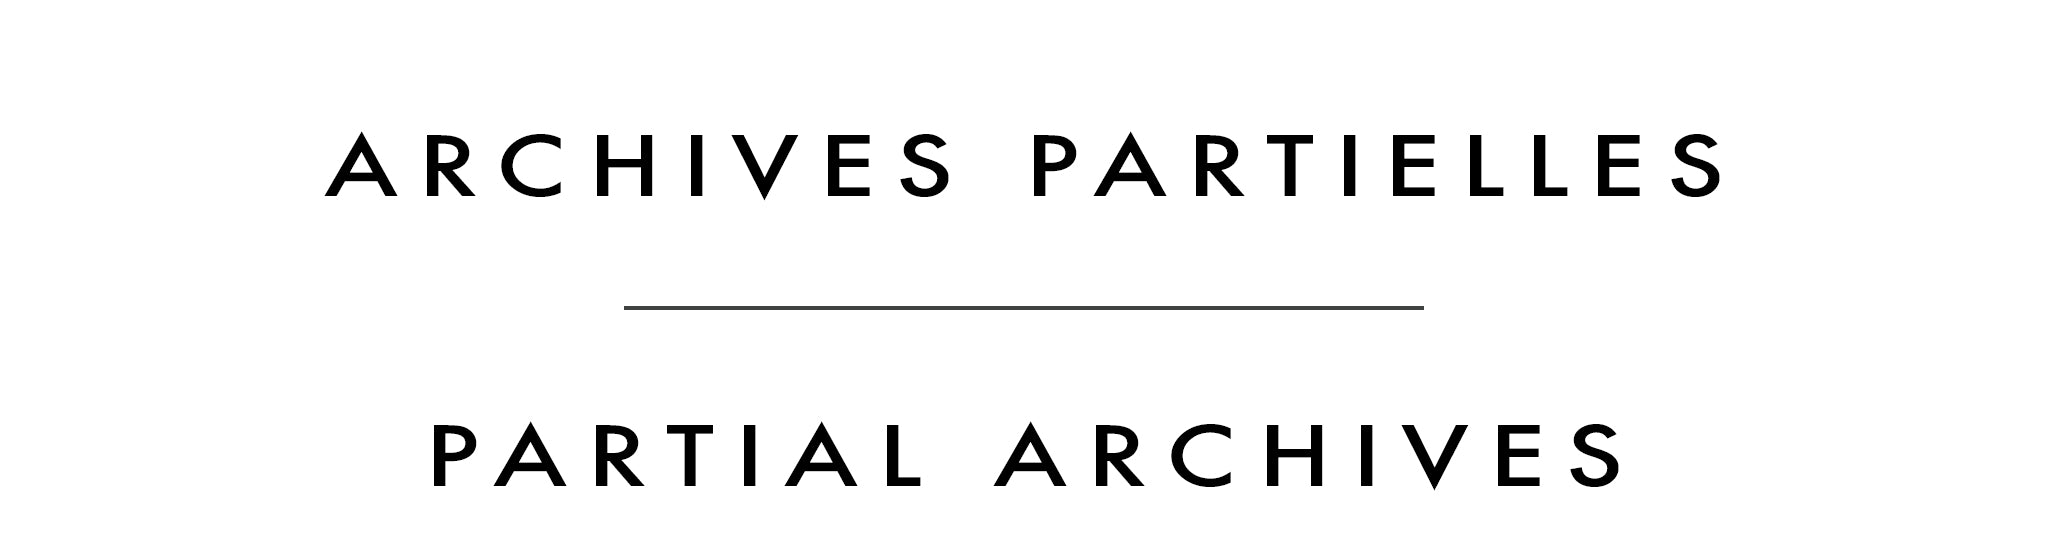 Archives partielles | Partial Archives | Jerzy Werbel